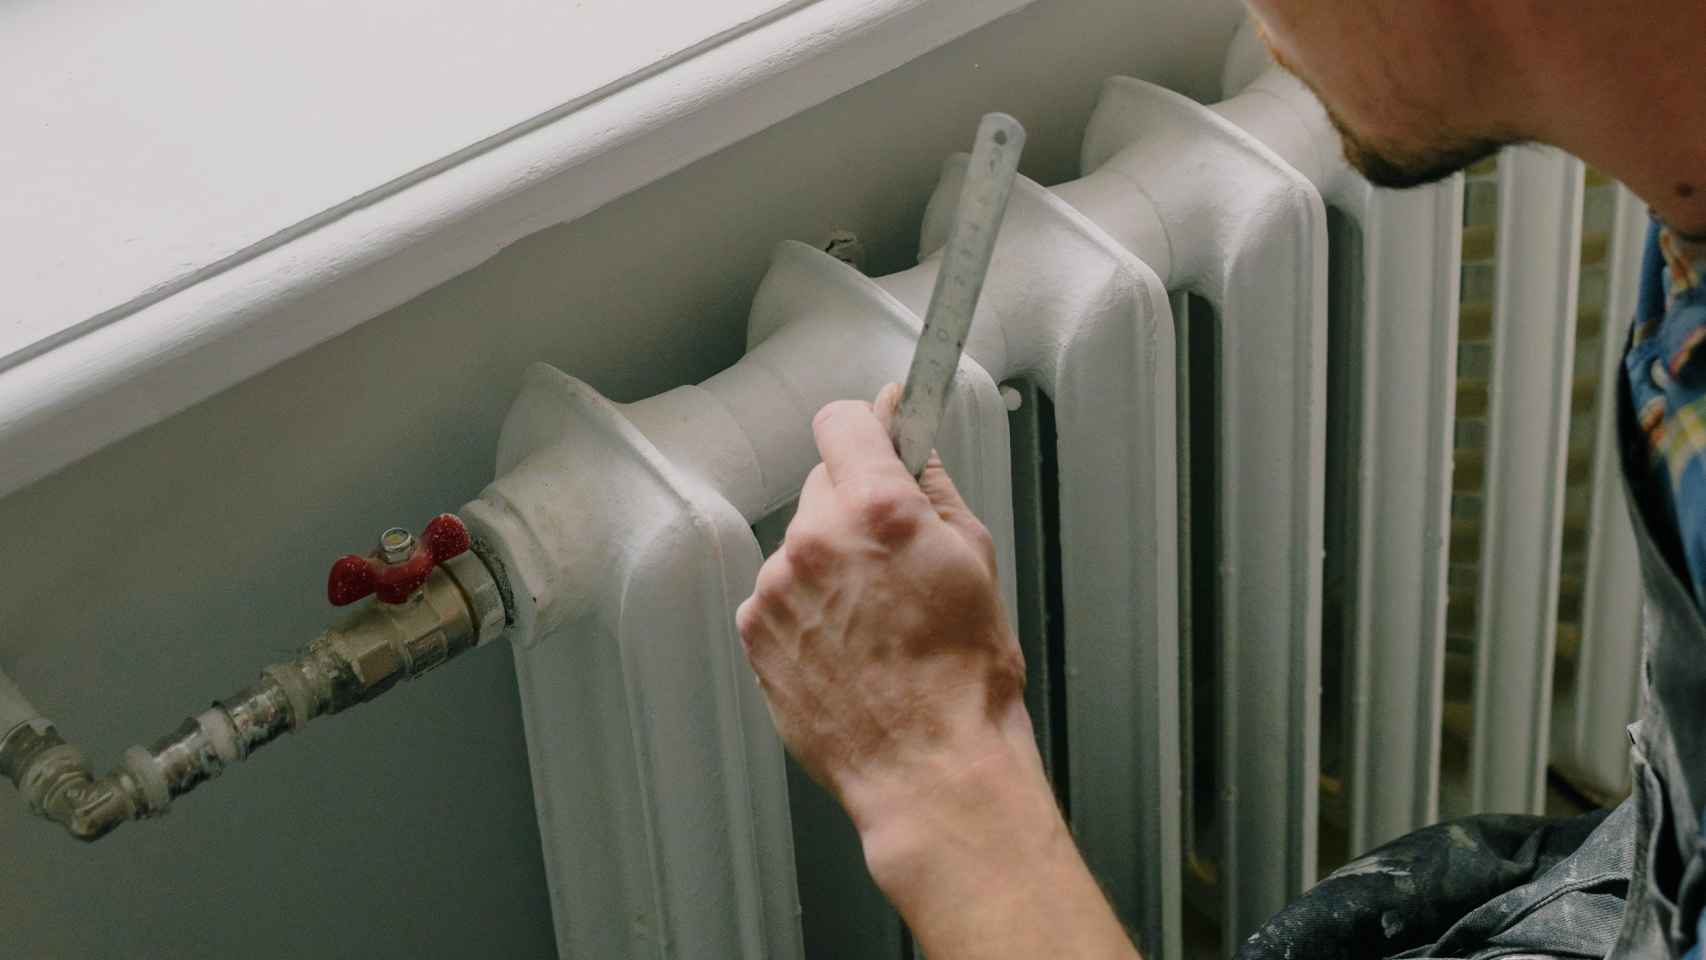 CALEFACCIÓN ] ¿Para limpiar el radiador de calefacción?